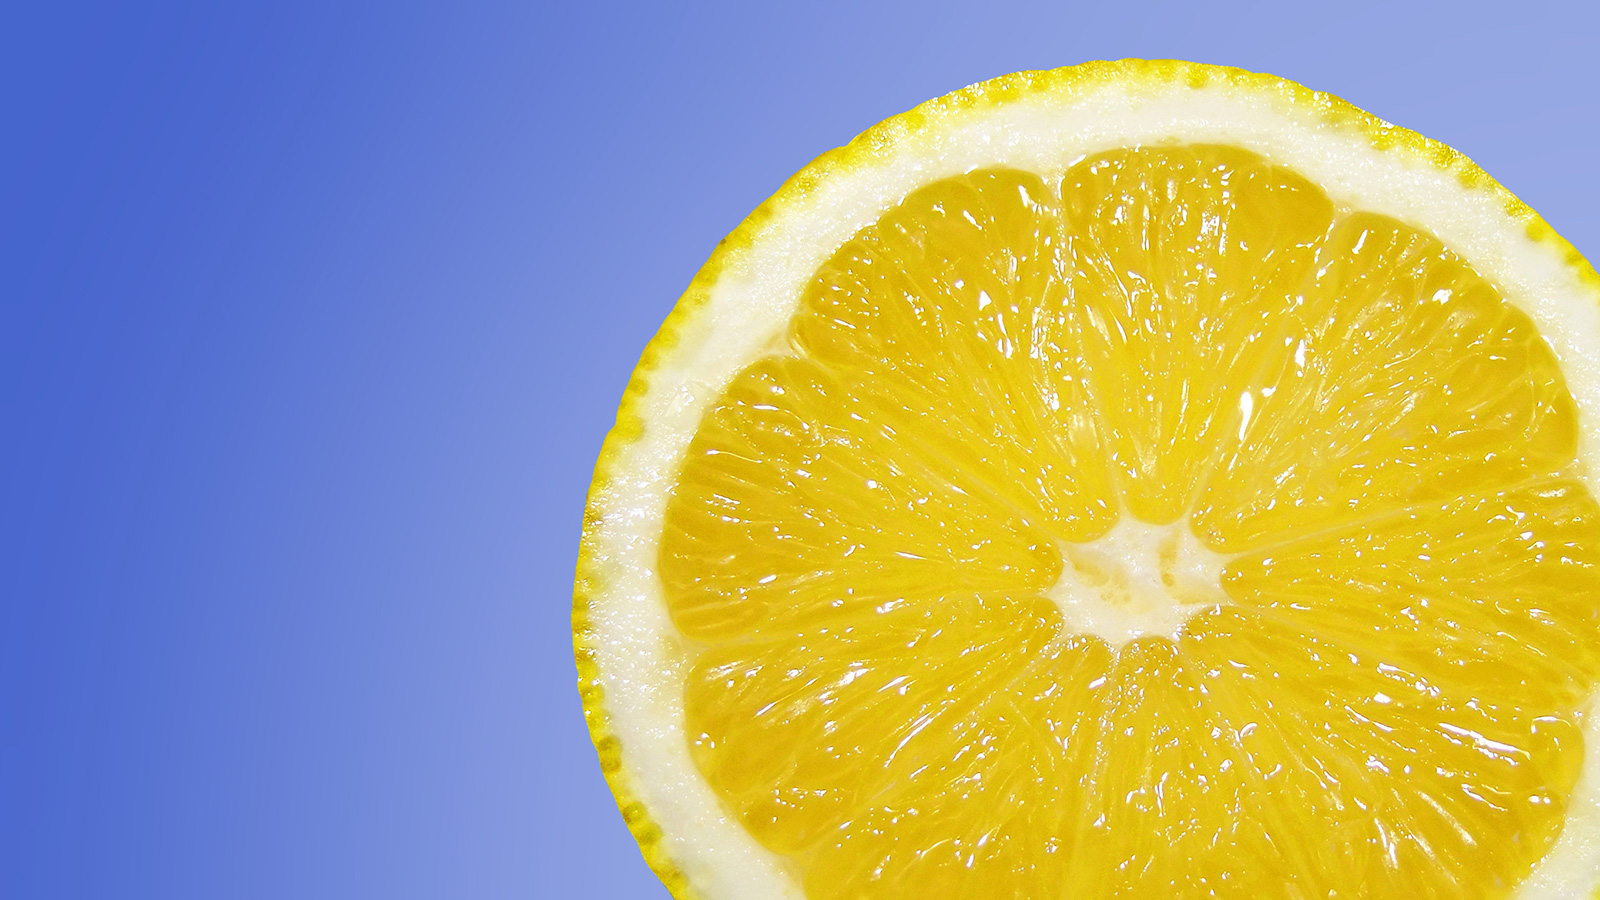  الليمون أساسي من مكونات الخلطة التي تساعد على التخلص من الشخير(مواقع التواصل)